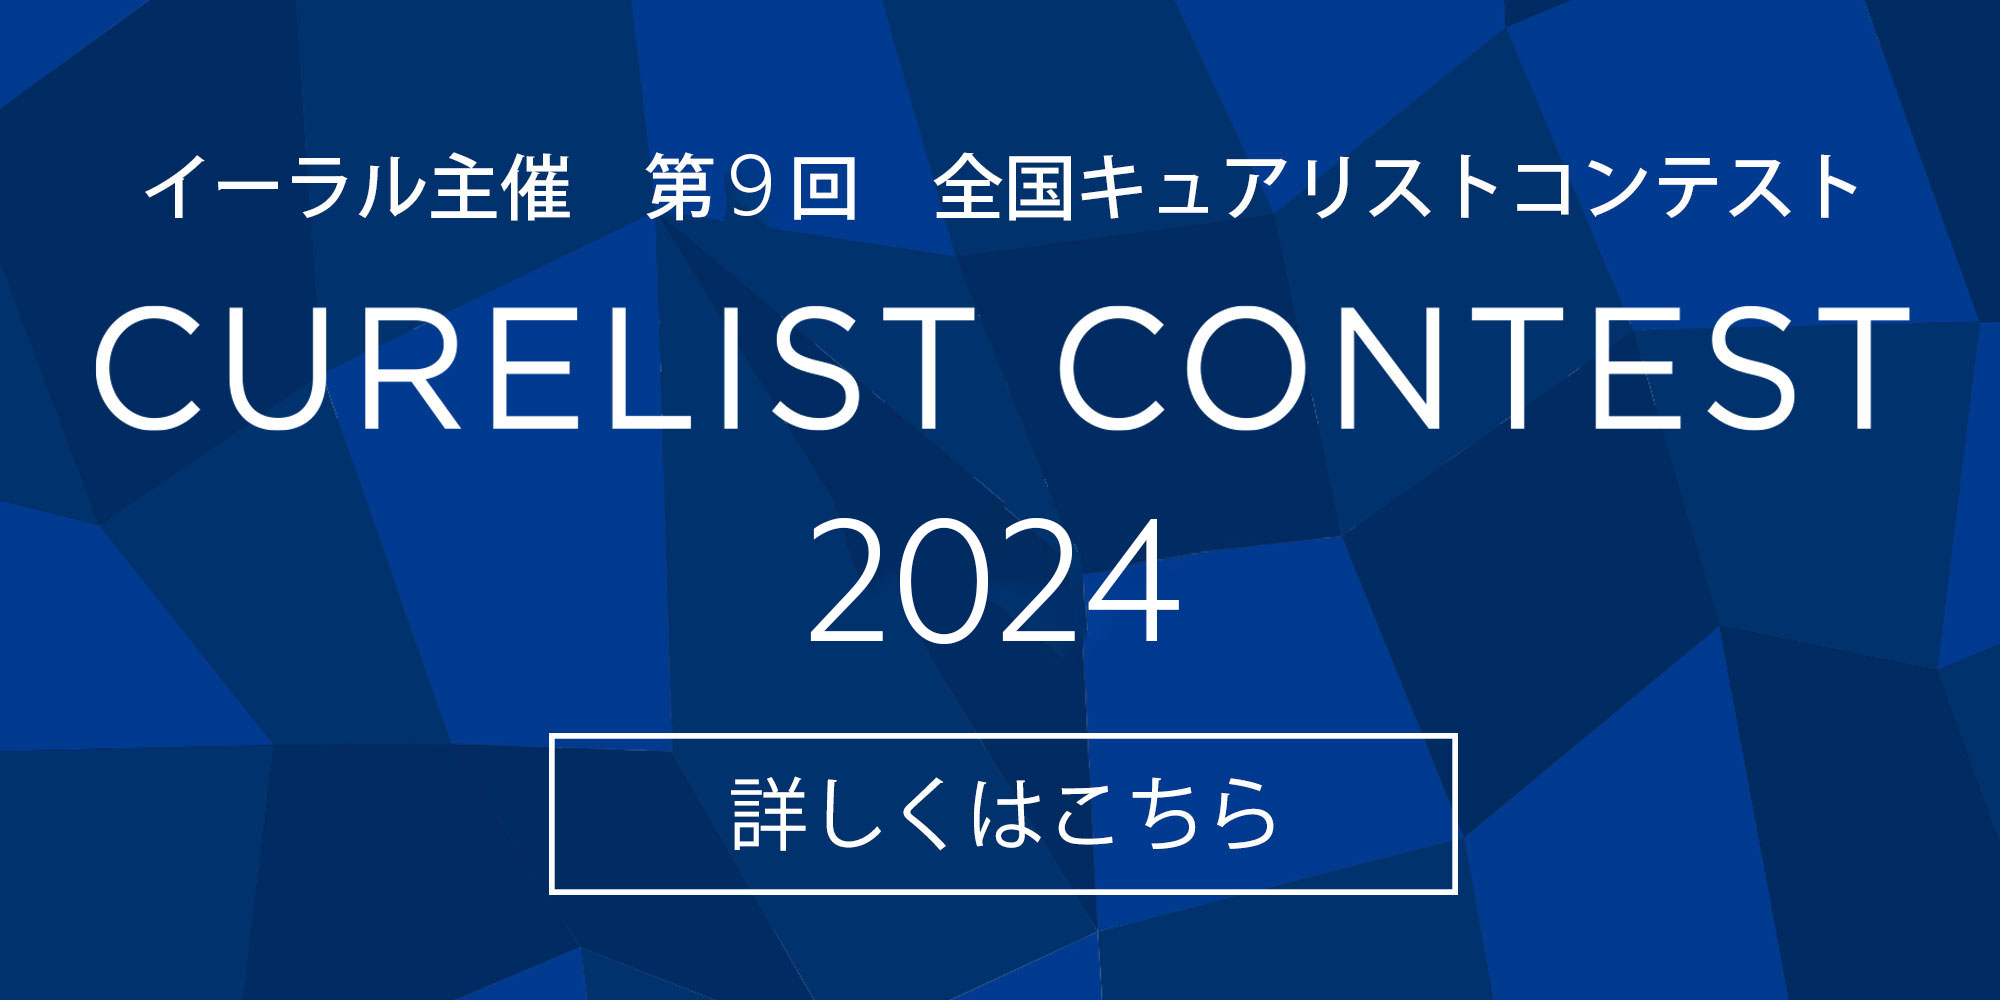 Curelist Contest 2024